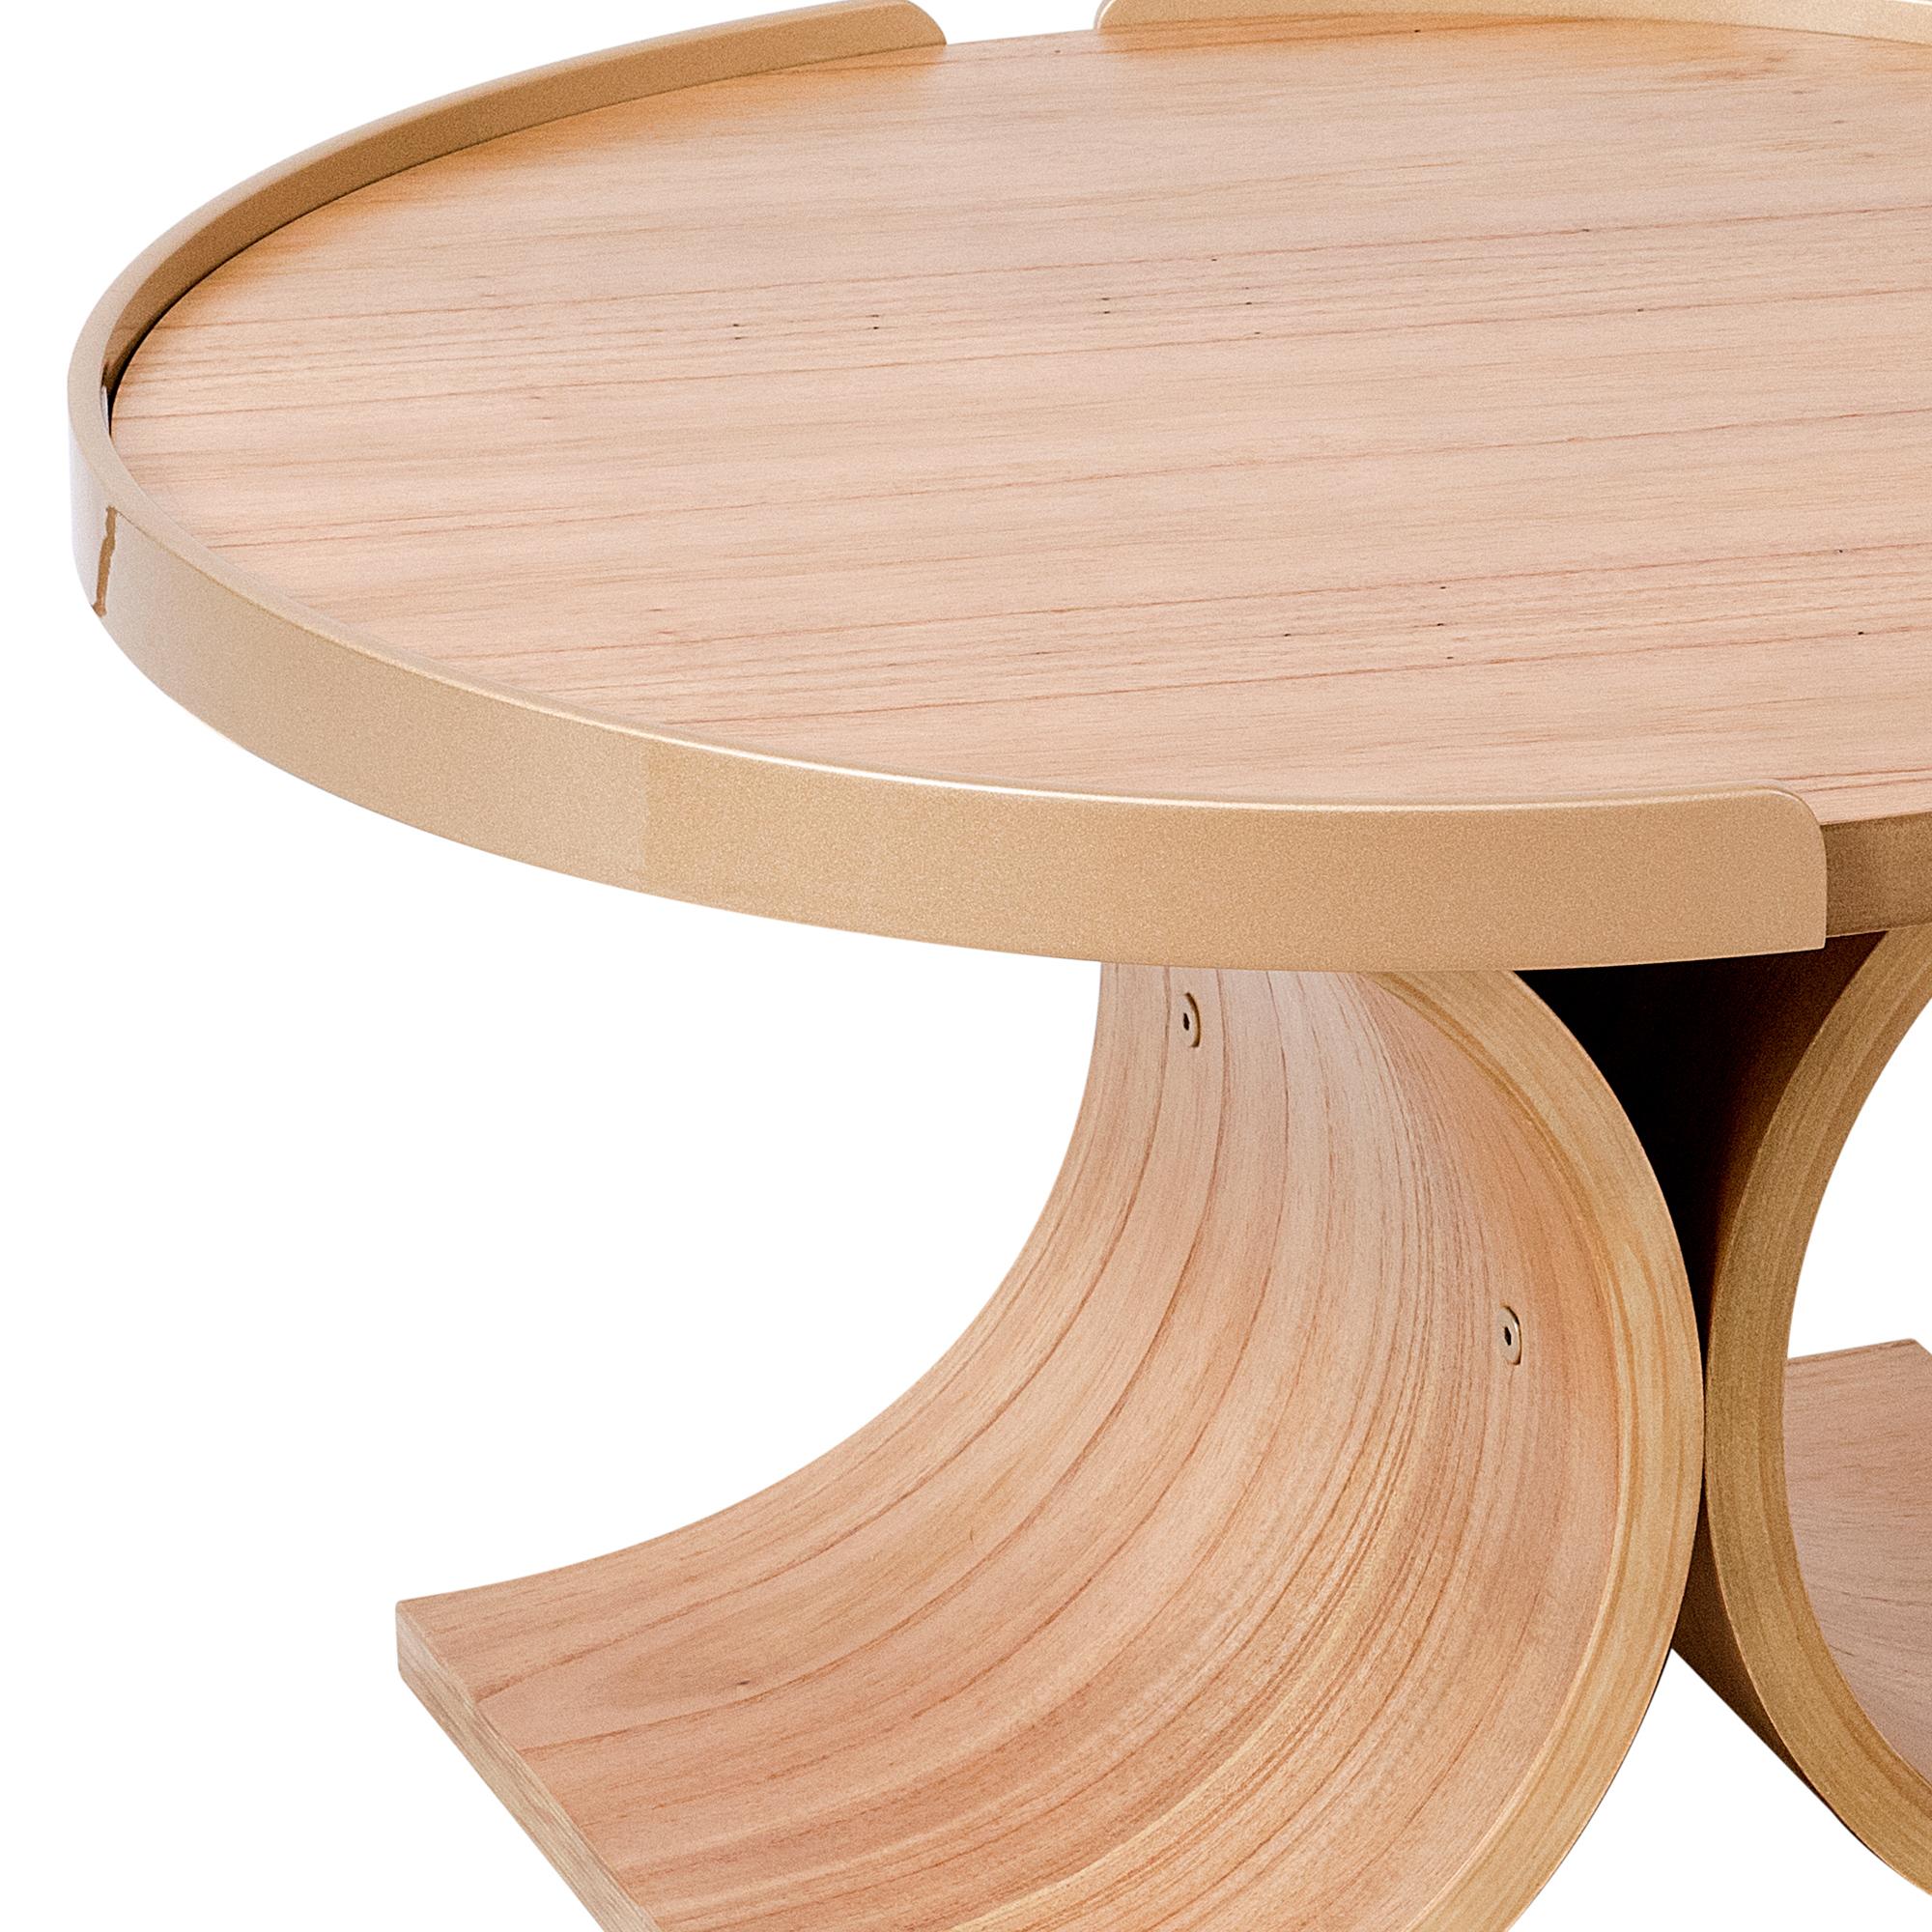 La table centrale Nature est dotée d'un piètement en multiplis de bois naturel cinnamon incurvé. (20mm d'épaisseur)
Le plateau est fabriqué dans le même bois et la même finition, la cannelle.  Sur les bords se trouvent deux demi-cercles en acier au